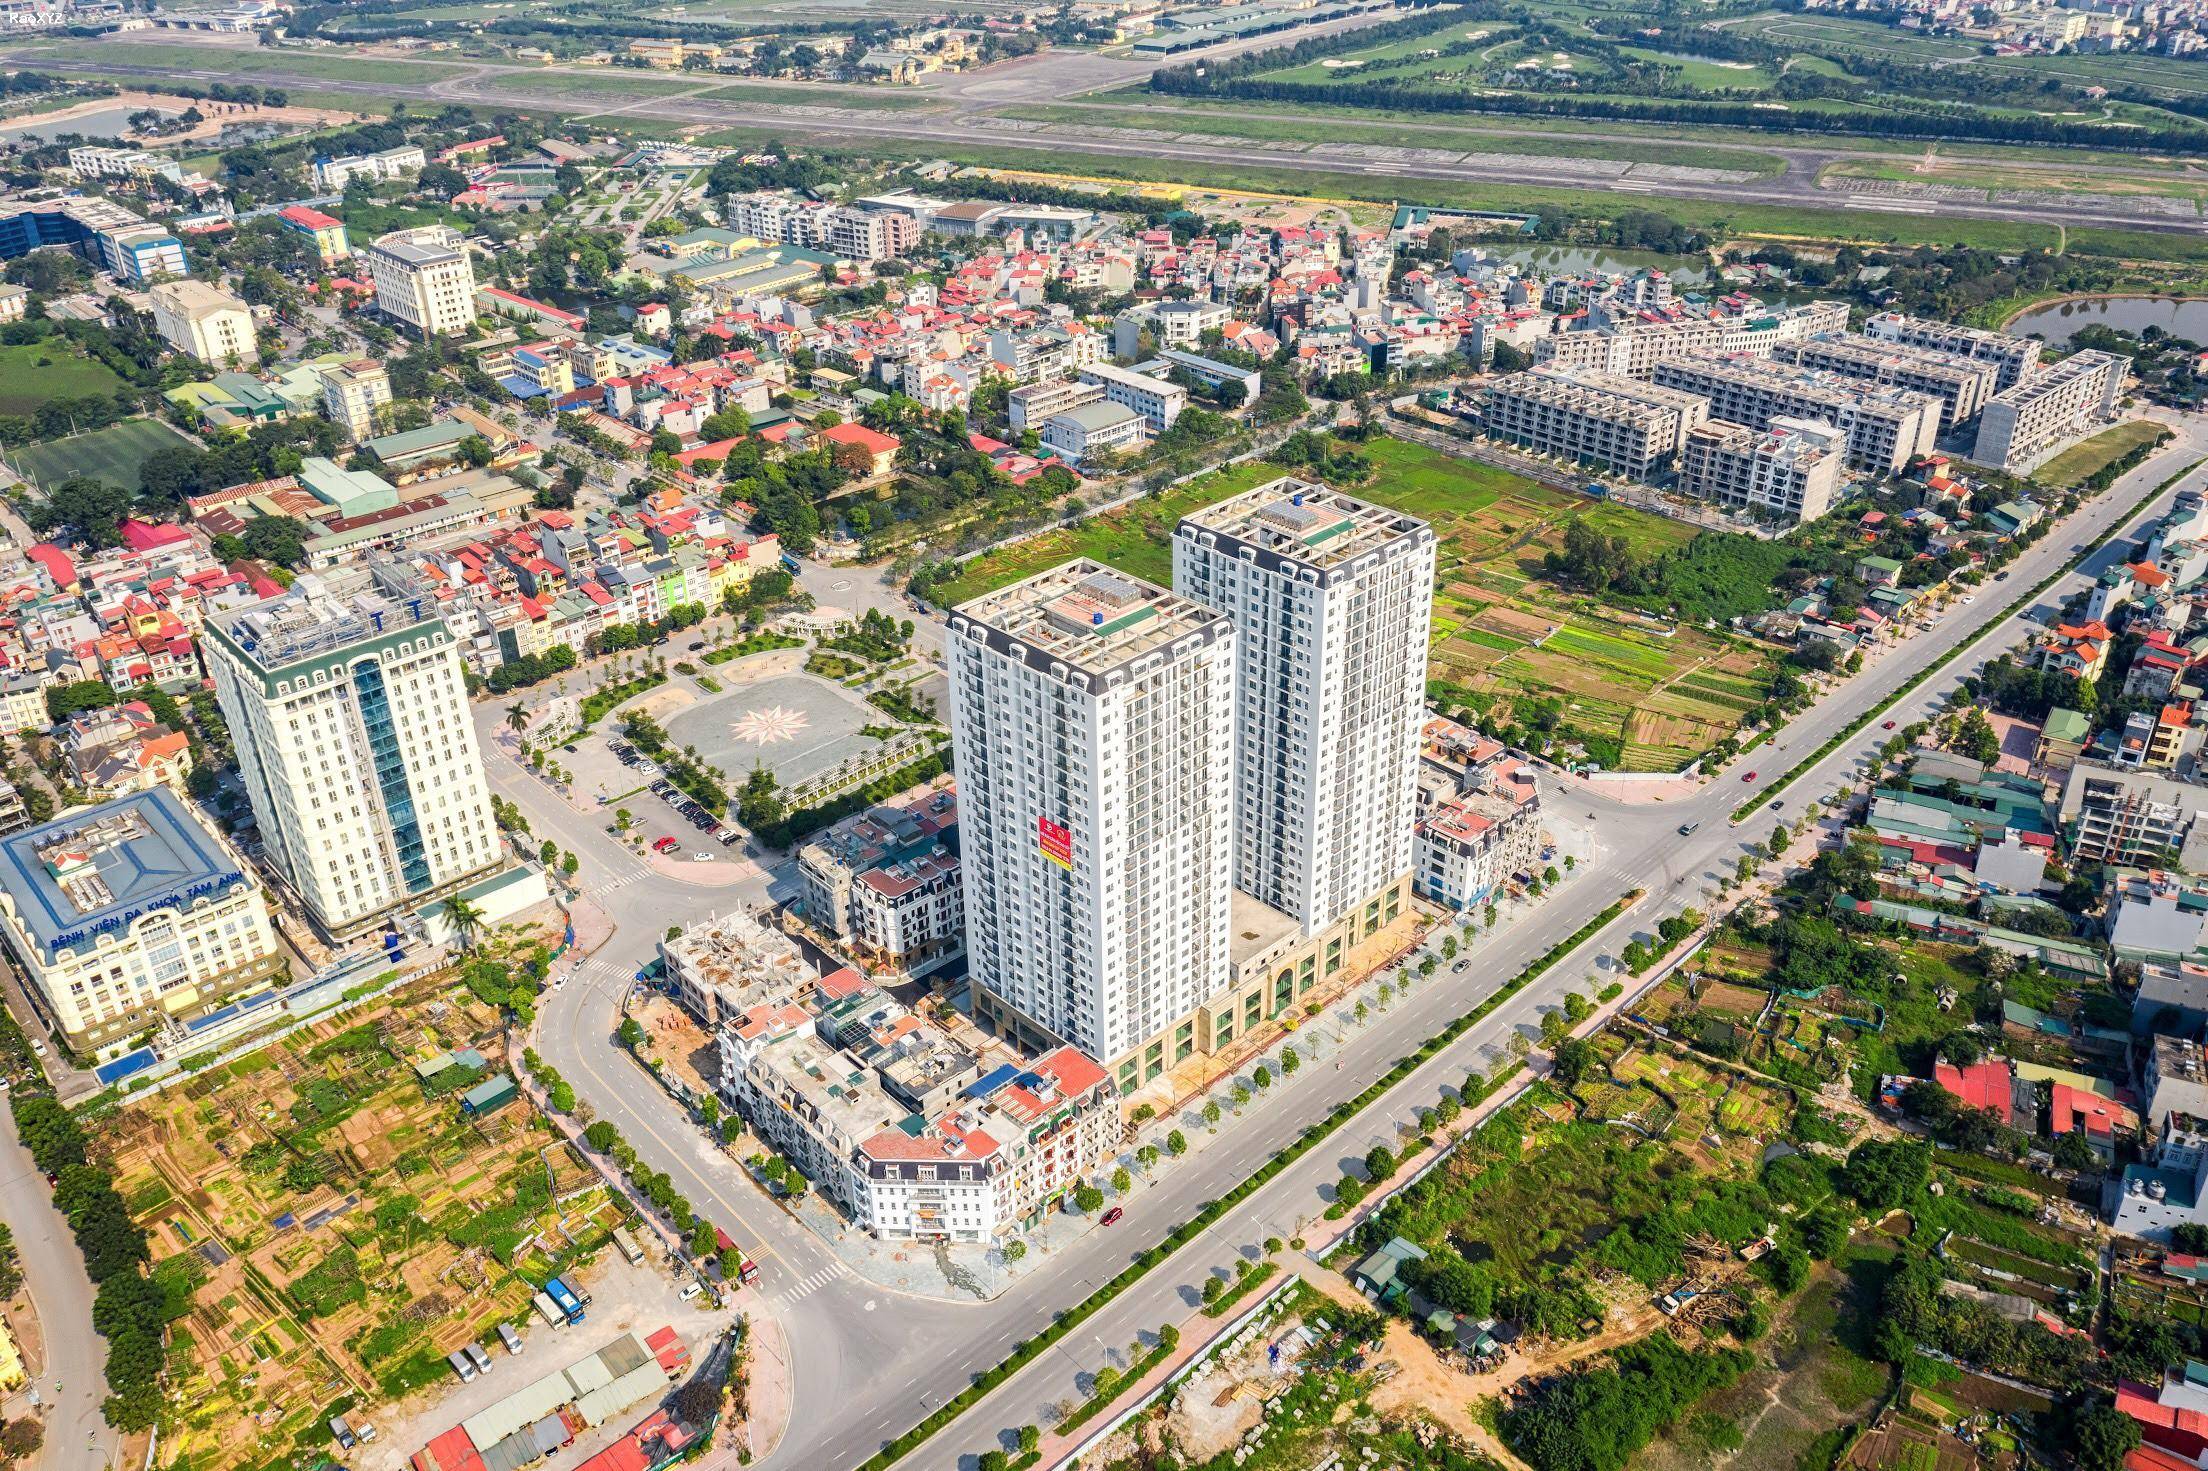 Hàng ngoại giao quỹ căn 2,3 phỏng ngủ chung cư Hc Golden City Hồng Tiến, Long Biên.